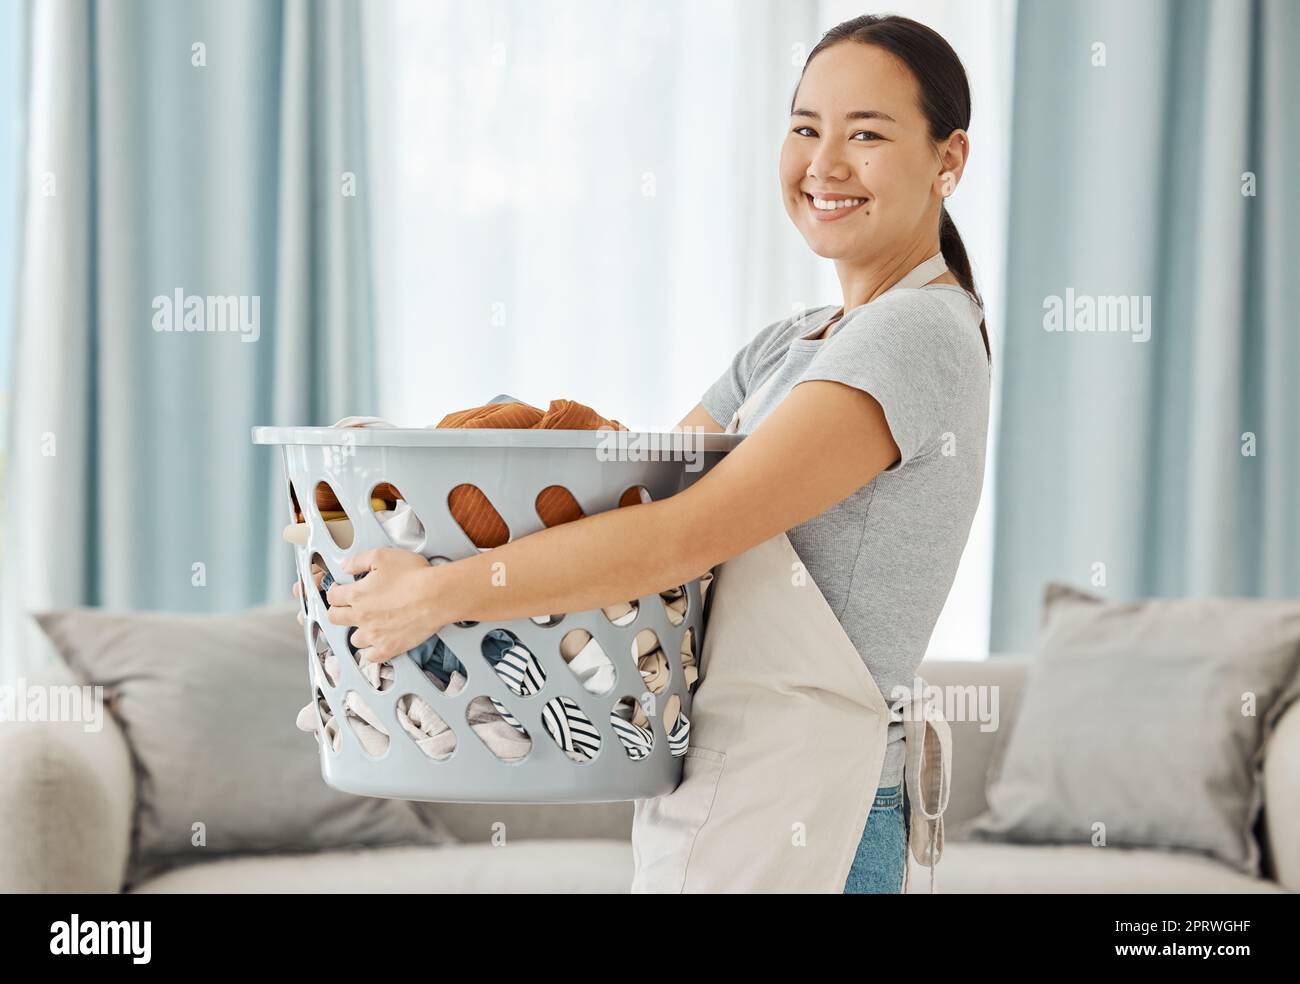 Bonne femme asiatique de nettoyage avec la blanchisserie travaillant pour la maison, maison ou hôtel hospitalité nettoyage aider l'agence de service. La femme de ménage ou l'ouvrier japonais sourit dans l'appartement avec des vêtements sales dans le panier à linge Banque D'Images